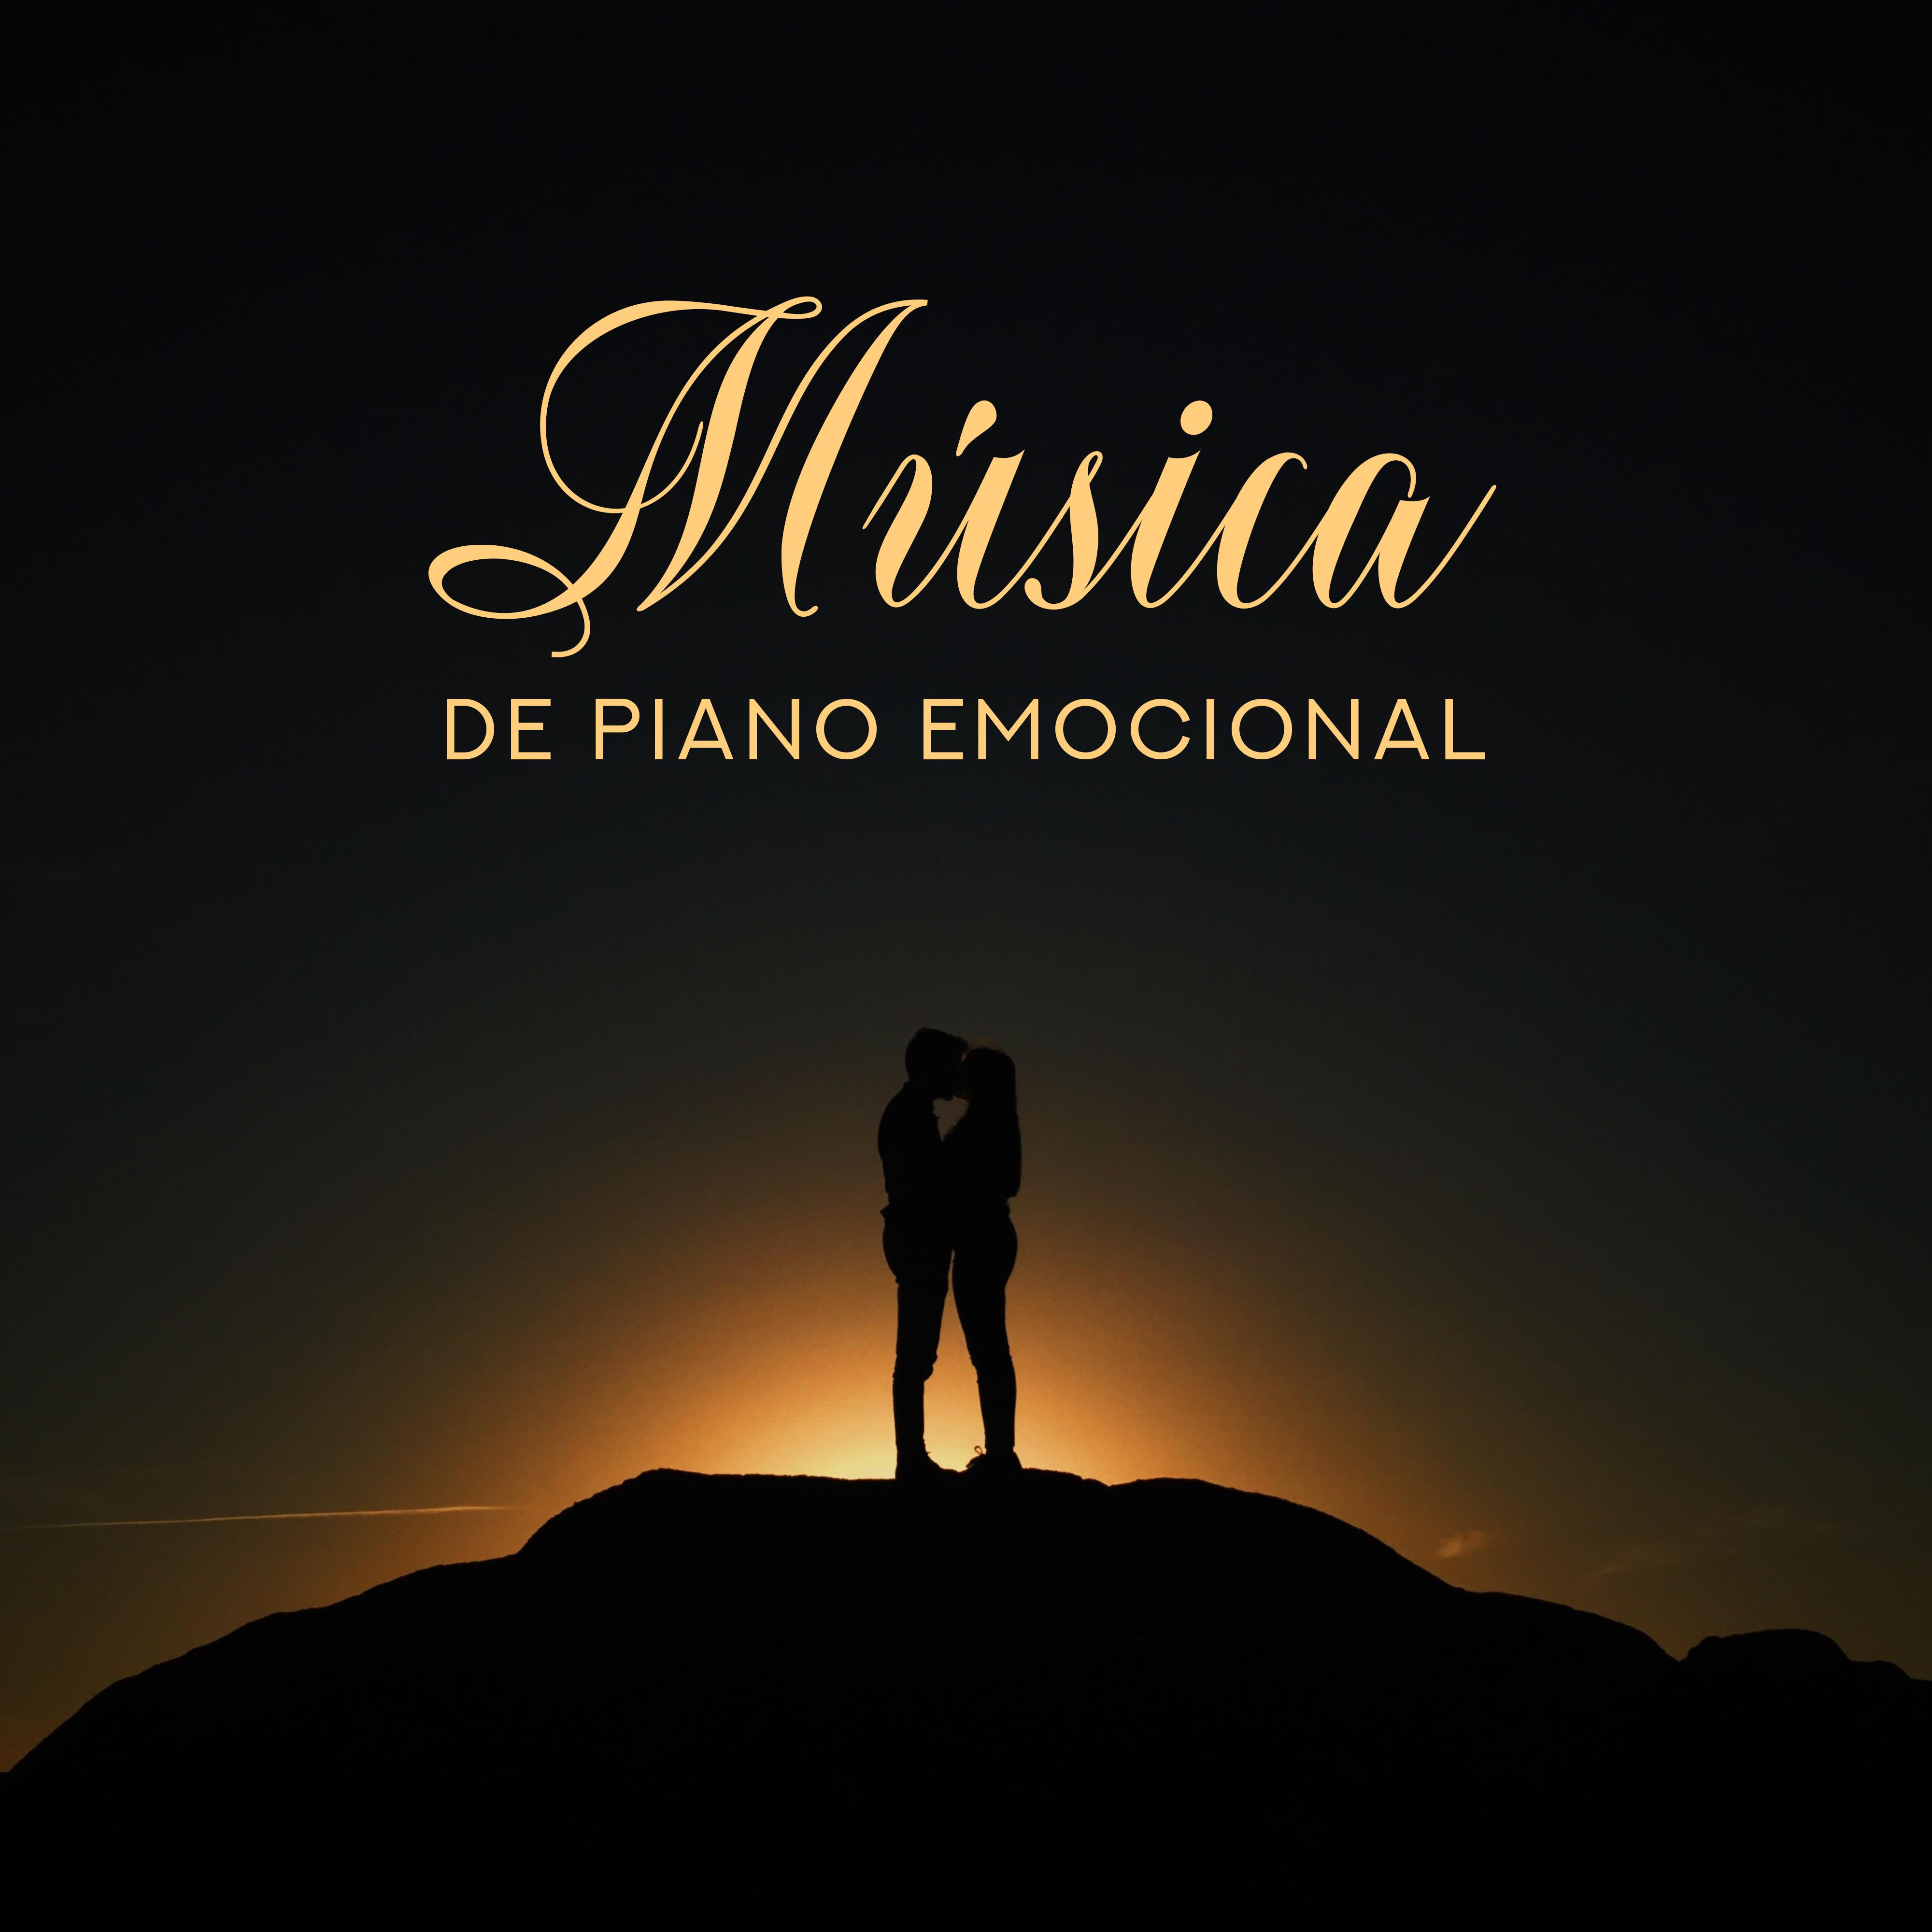 Mu sica de Piano Emocional  Roma nticas Baladas de Amor en los Ma s Bellos Arreglos de Piano para los Amantes